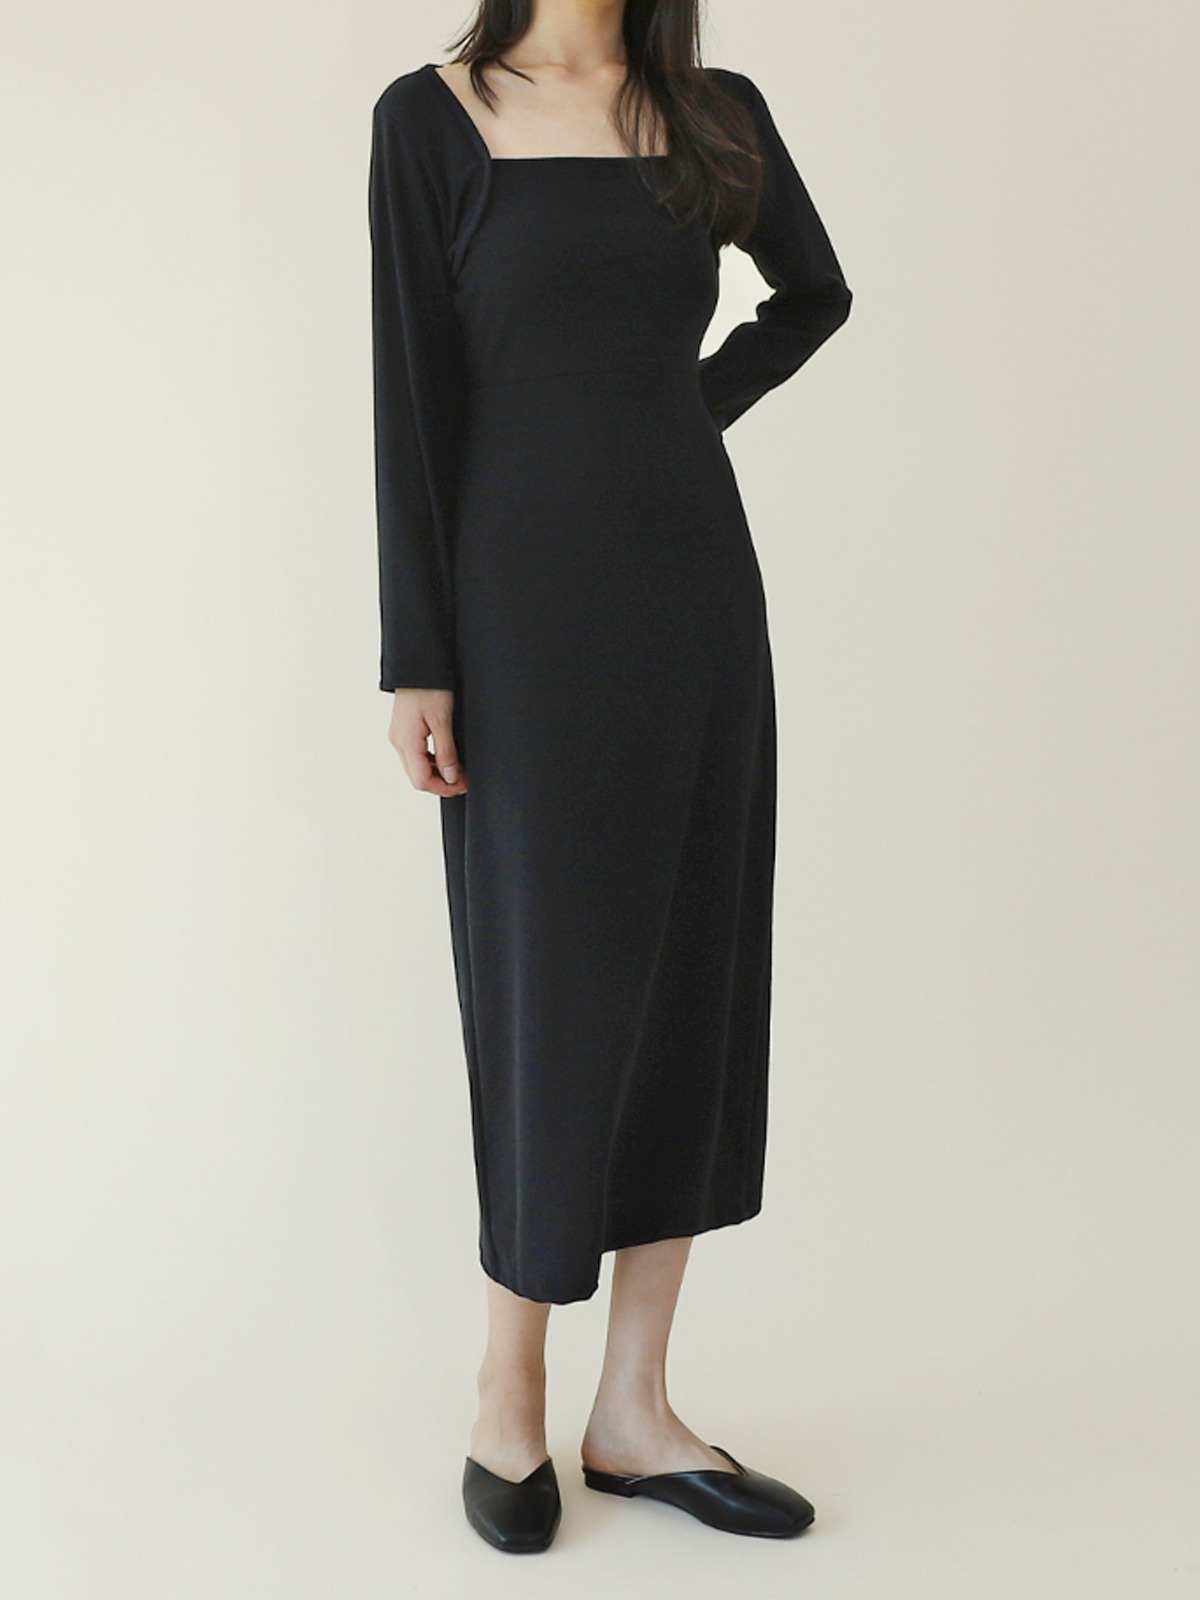 여성 원피스 LNGT001 여자 볼레로 블랙 드레스